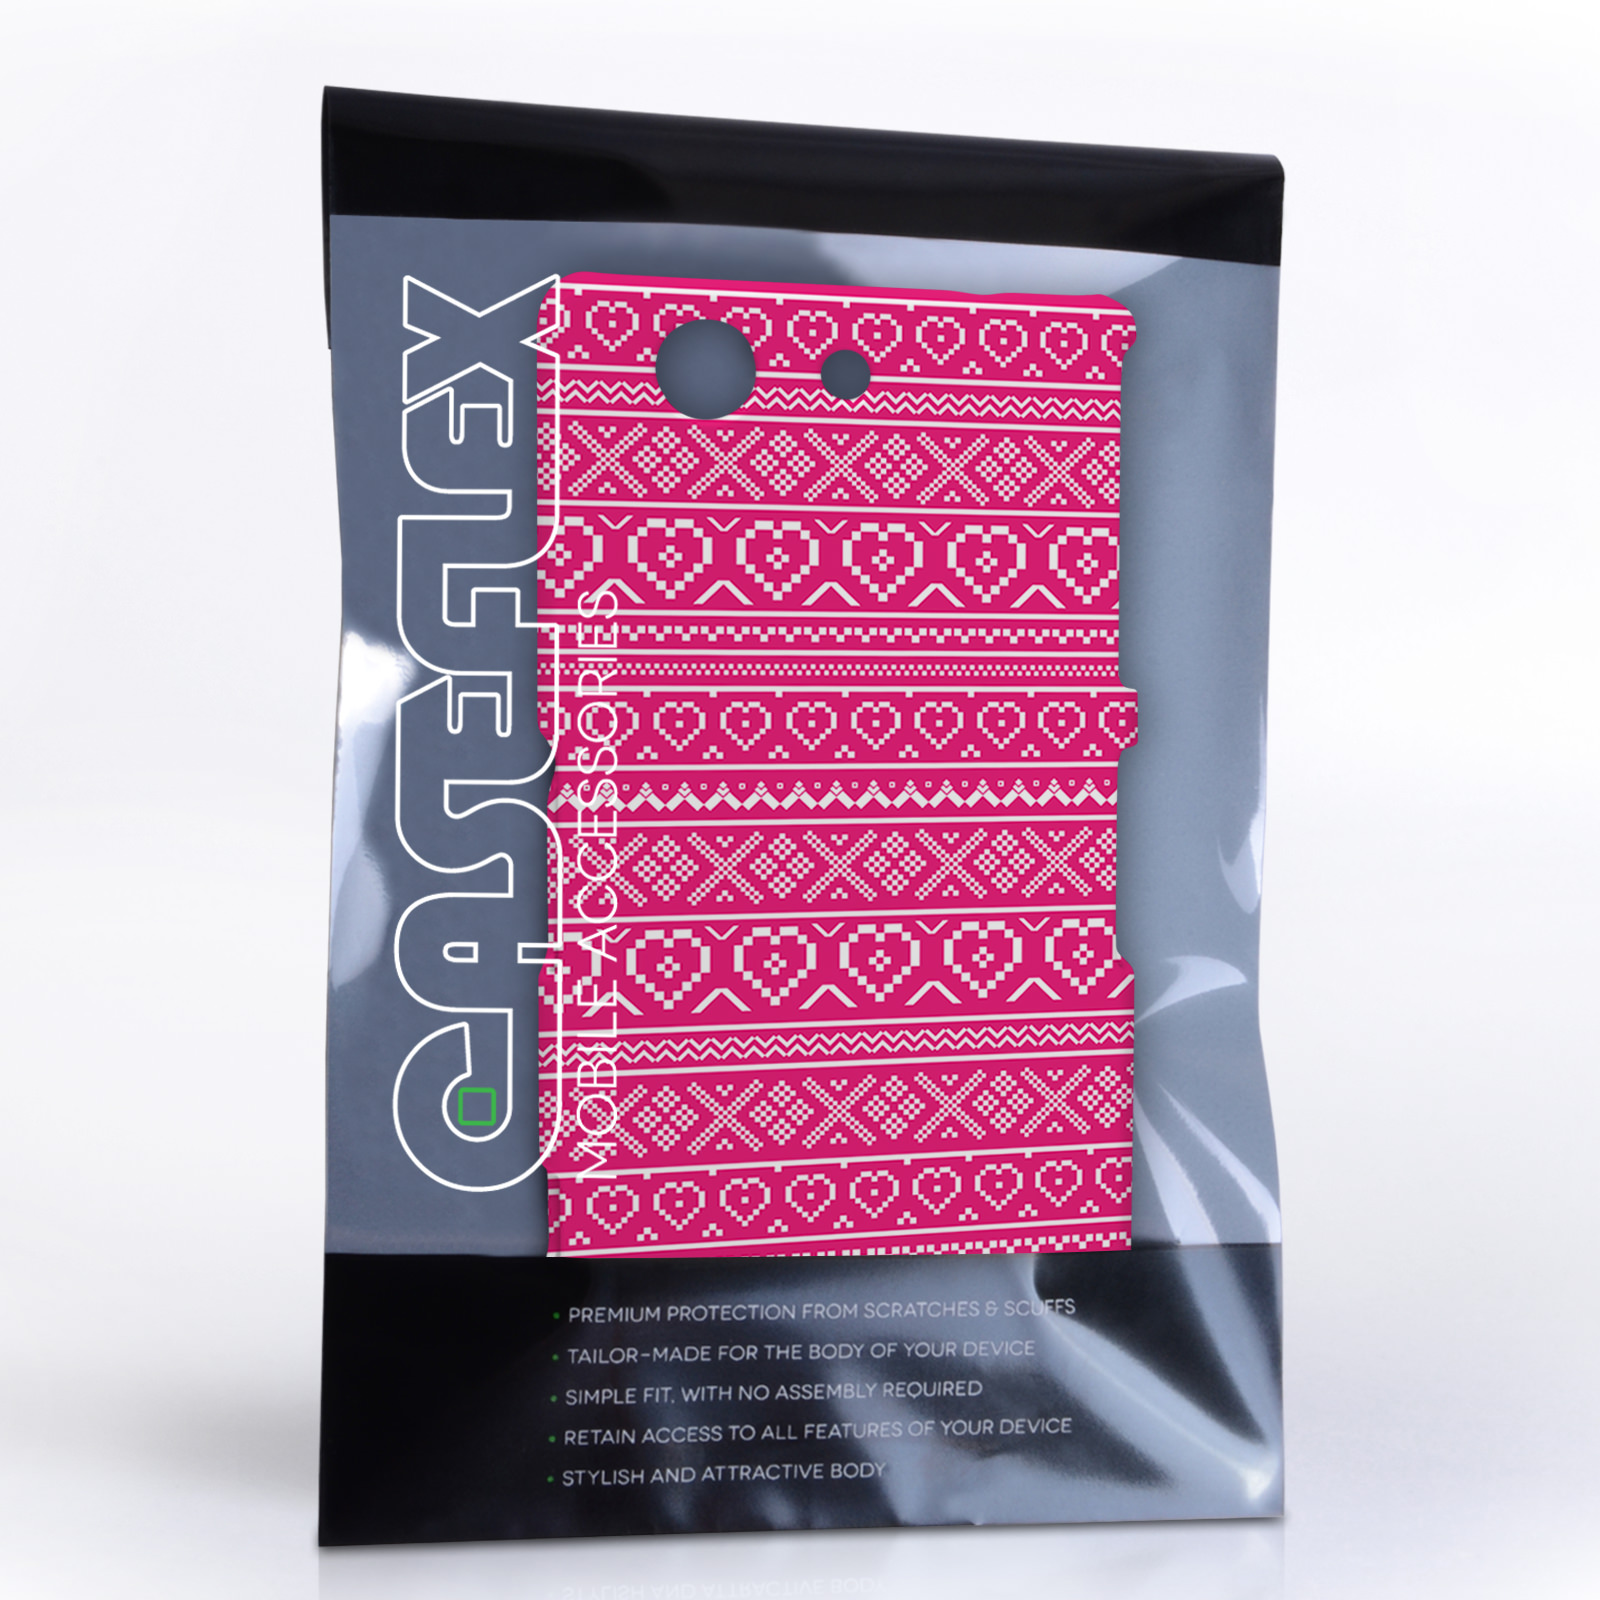 Caseflex Sony Xperia Z3 Compact Fairisle Case – Pink and White